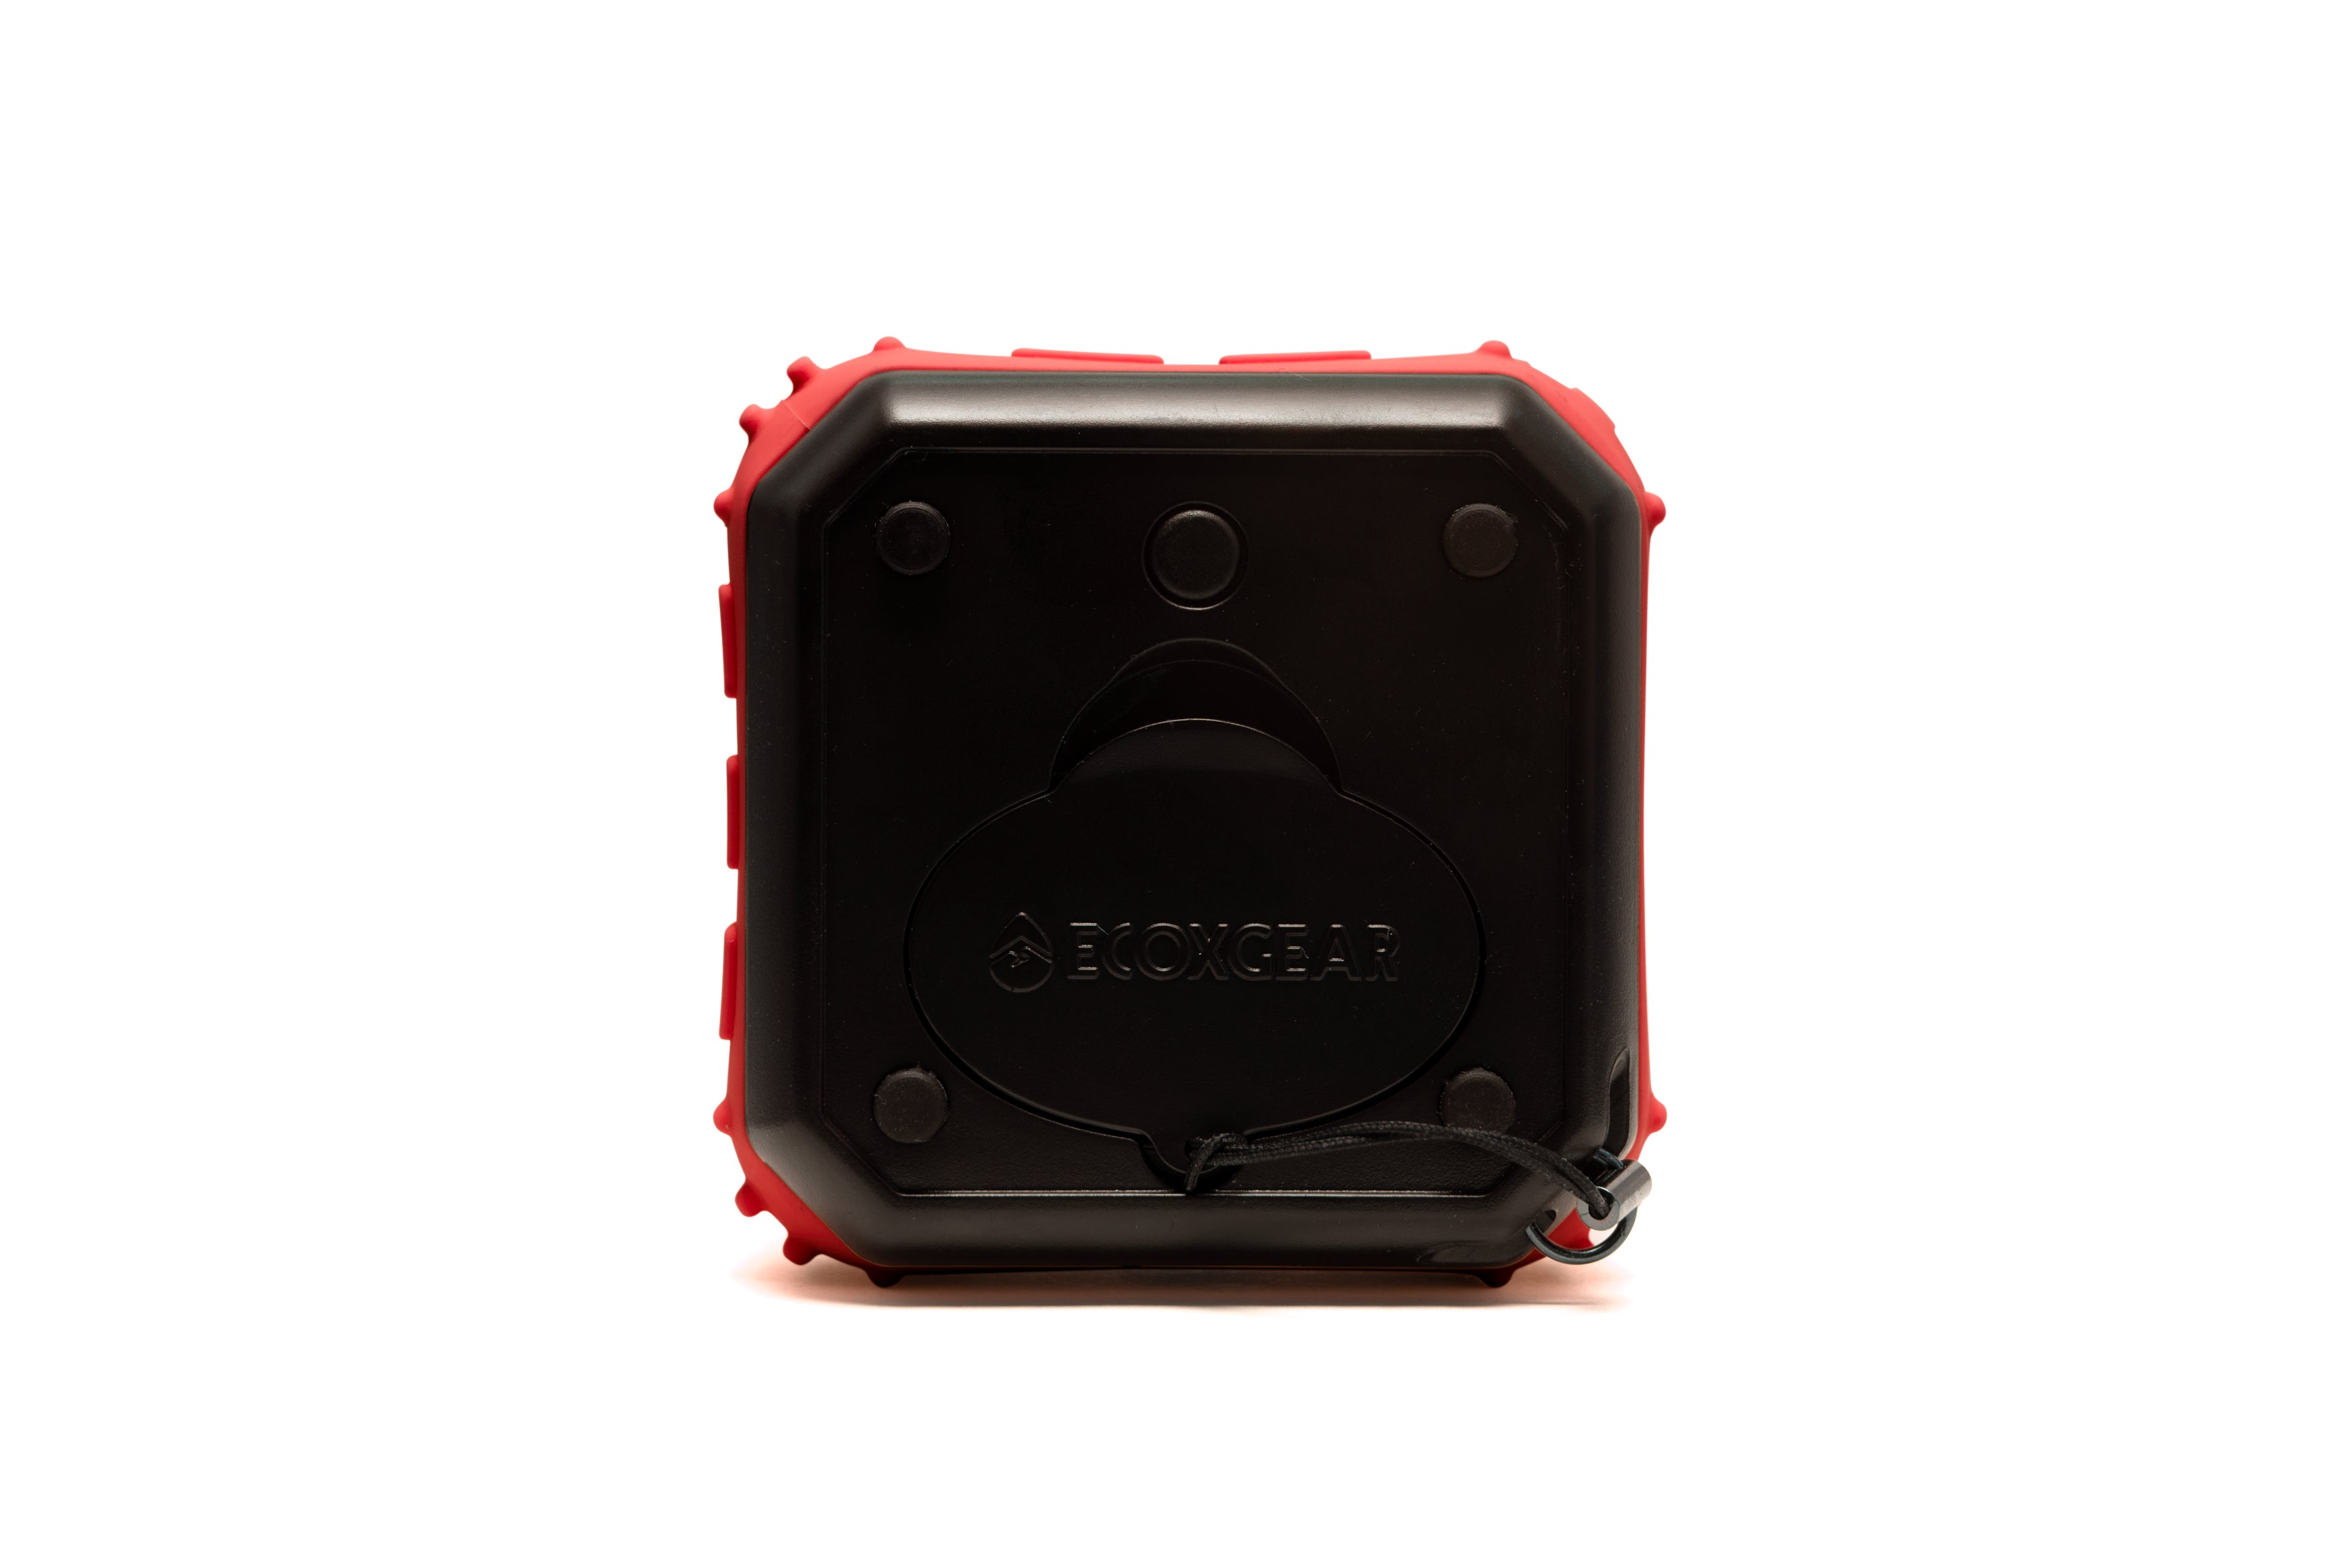 ECOXGEAR EcoPebble Lite2 Portable Waterproof Speaker